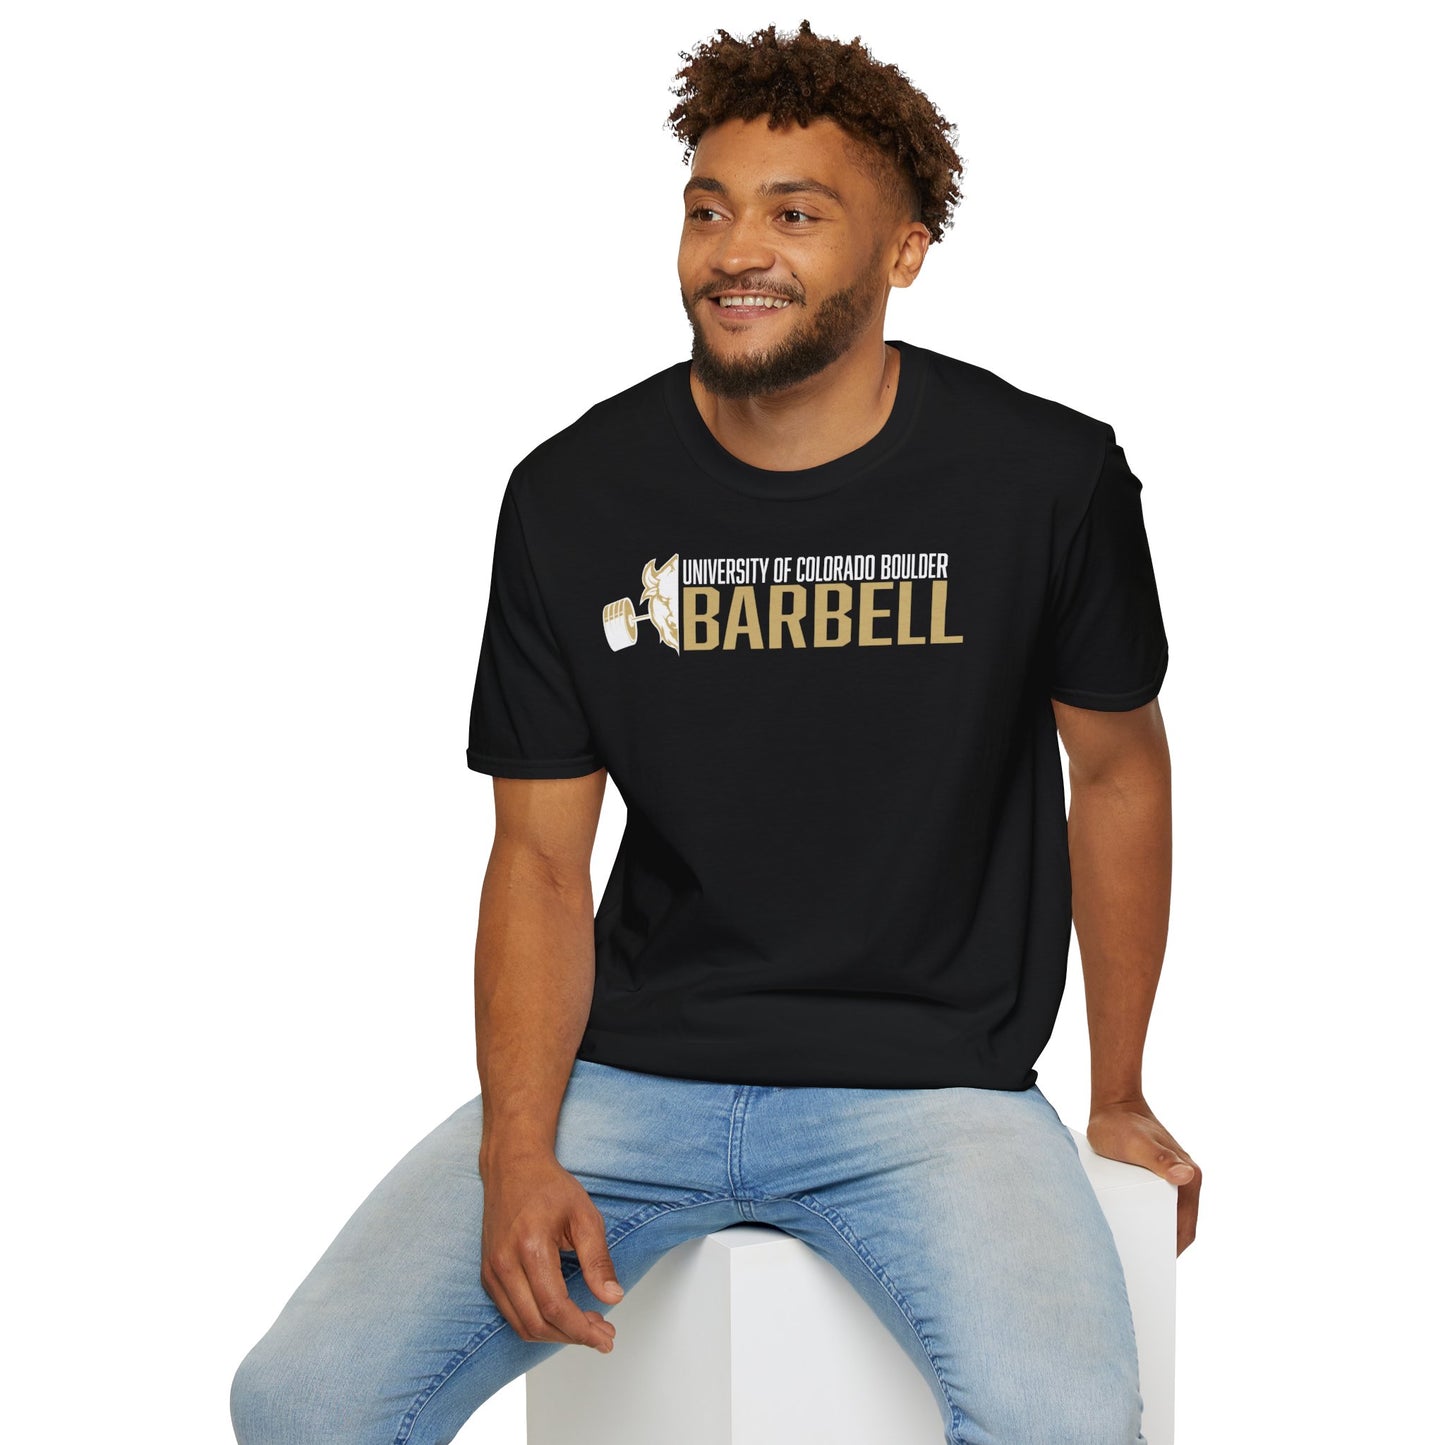 CU Barbell Core Values T-Shirt: Discipline